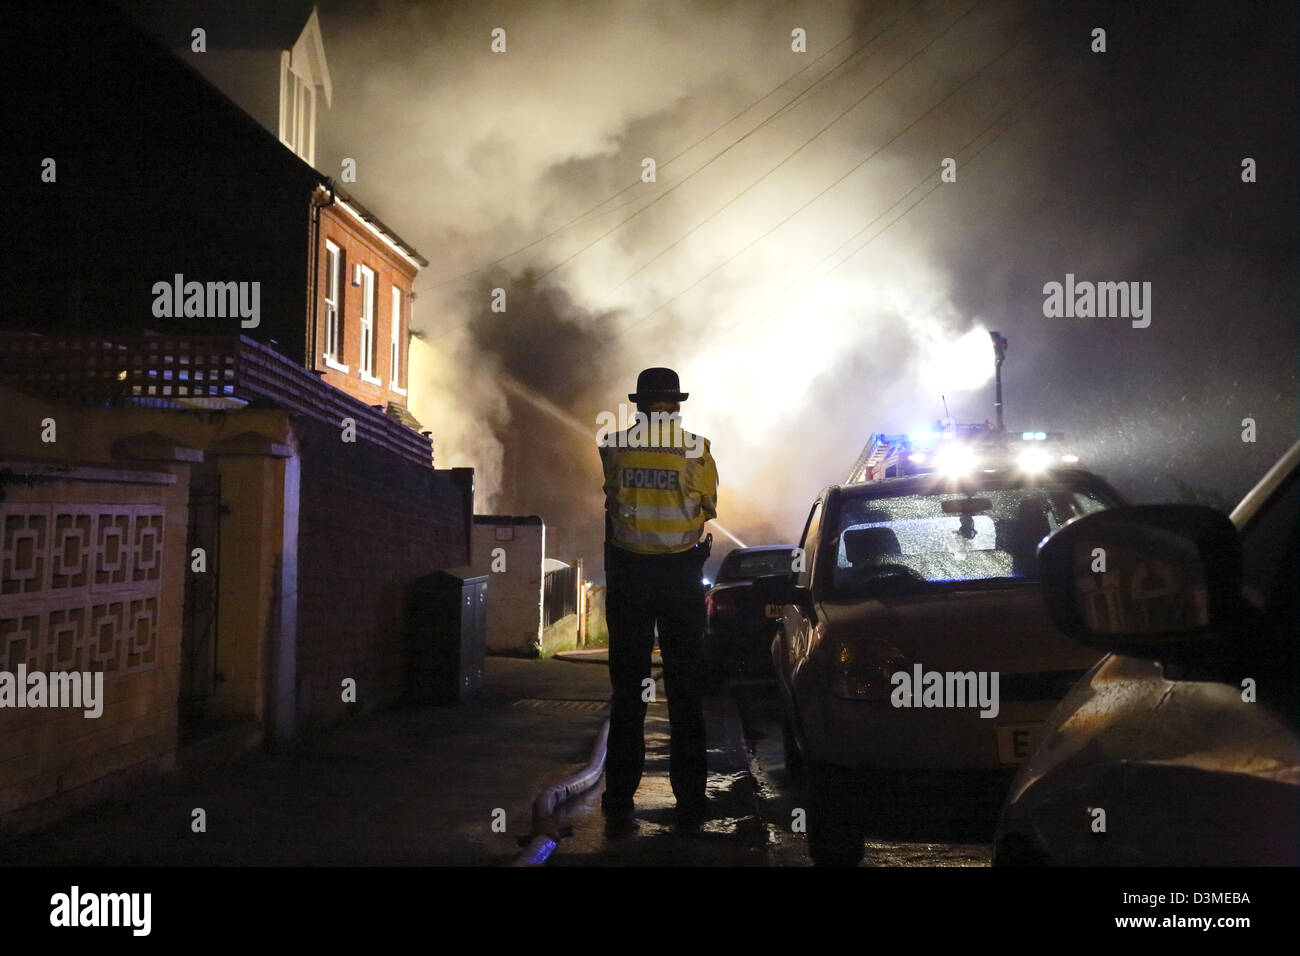 Une femme de la police observe alors que les pompiers éteindre un feu dans une maison à Norwich, Angleterre, Royaume-Uni. Banque D'Images